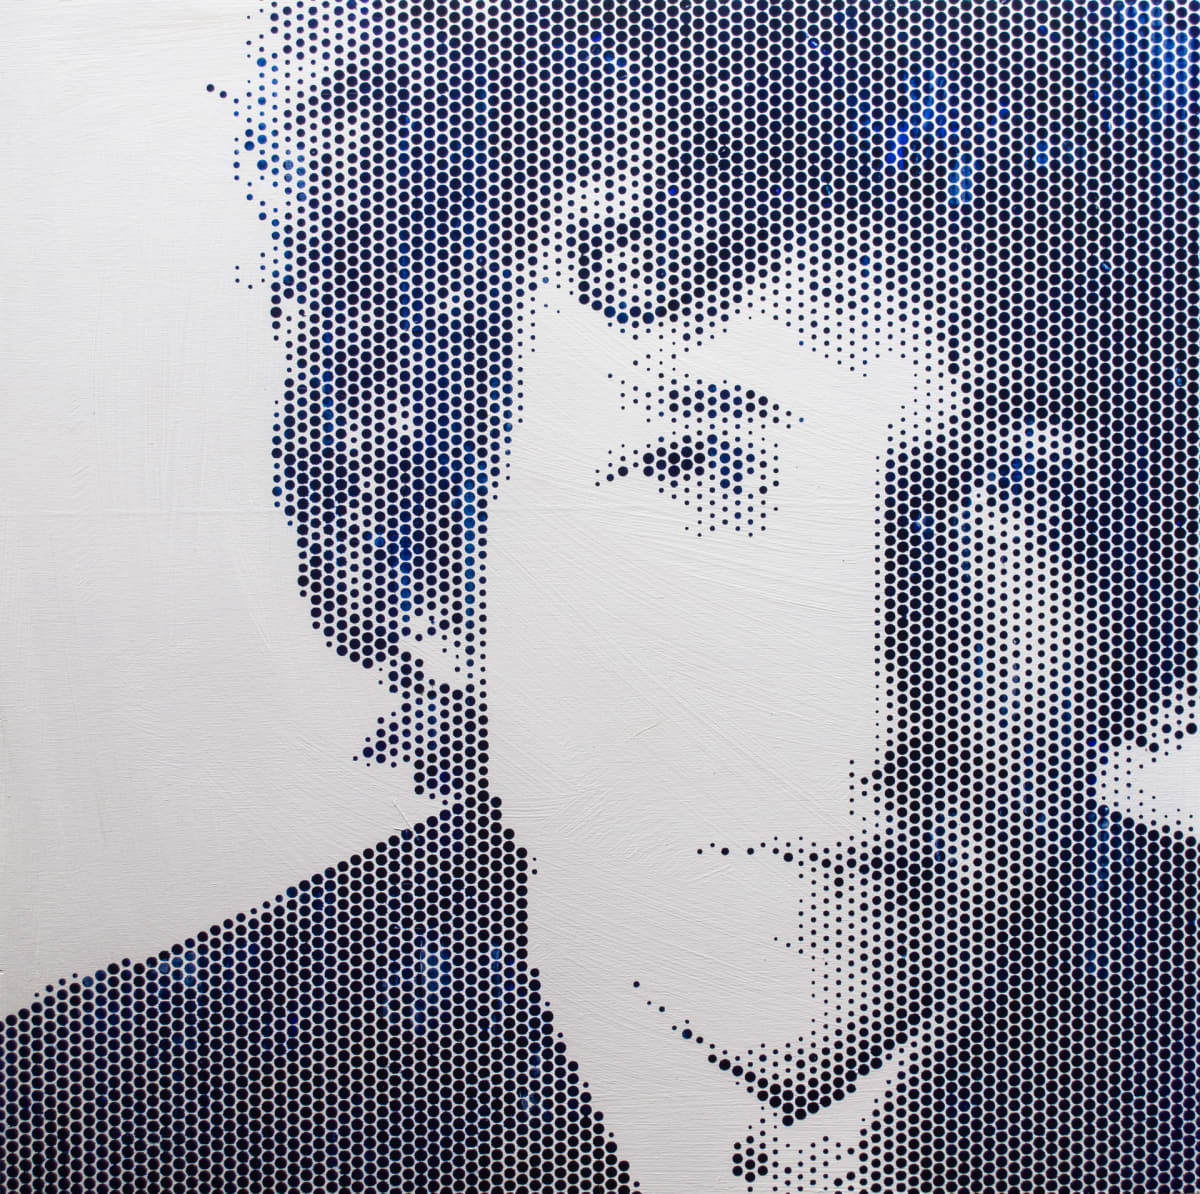 Bob Dylan III 